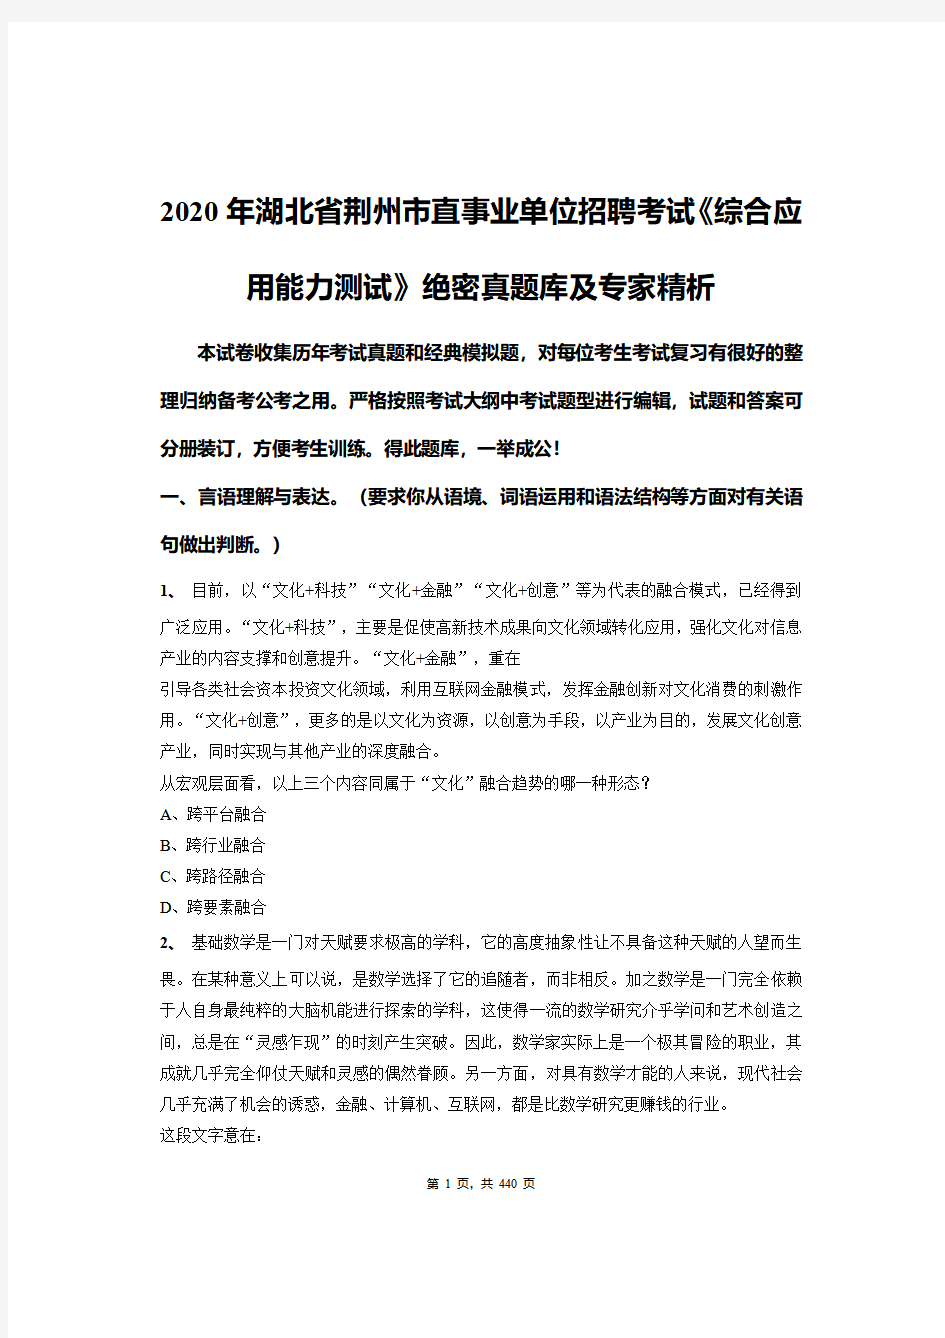 2020年湖北省荆州市直事业单位招聘考试《综合应用能力测试》绝密真题库及专家精析